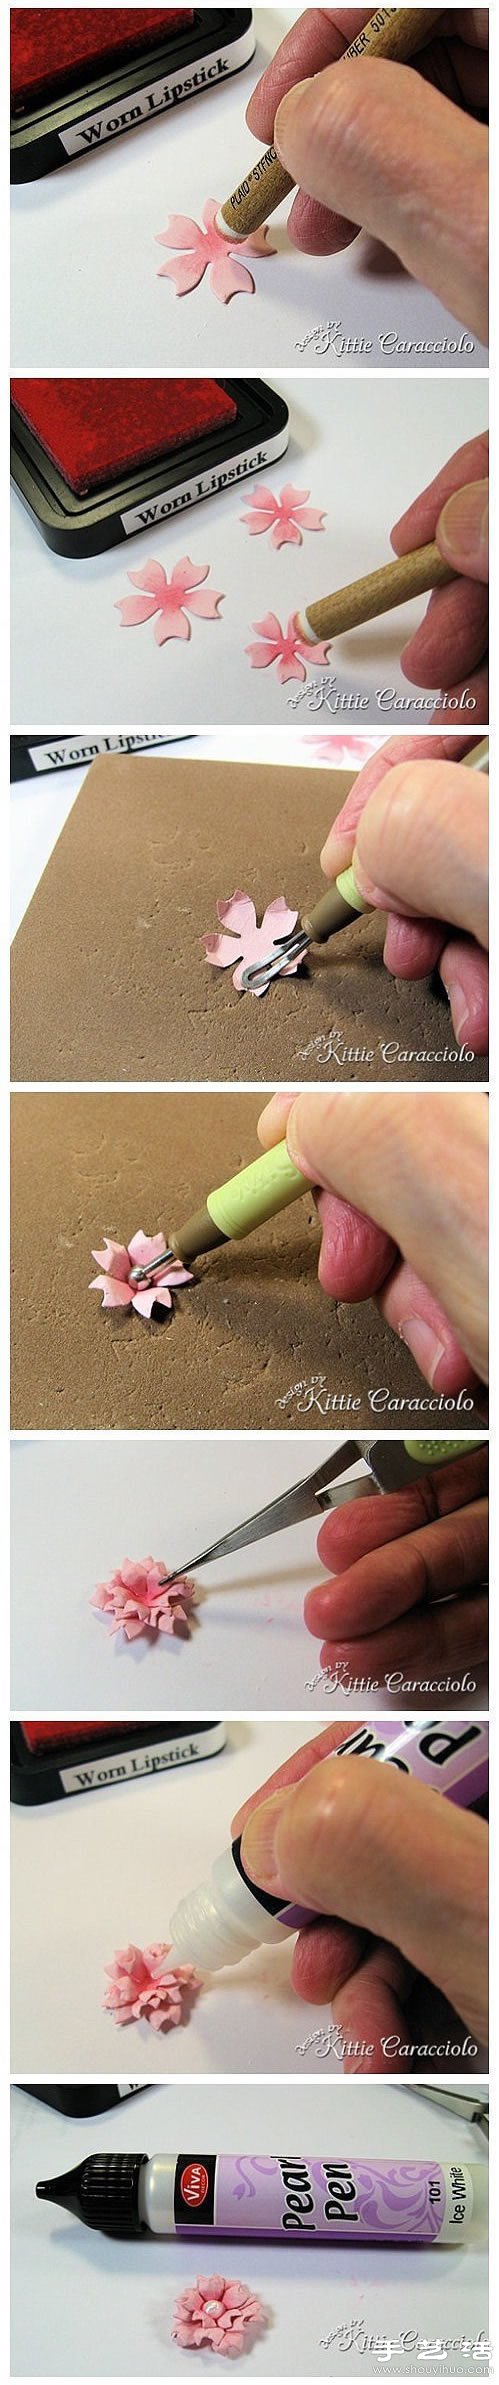 硬纸片手工制作立体花朵装饰画图解教程